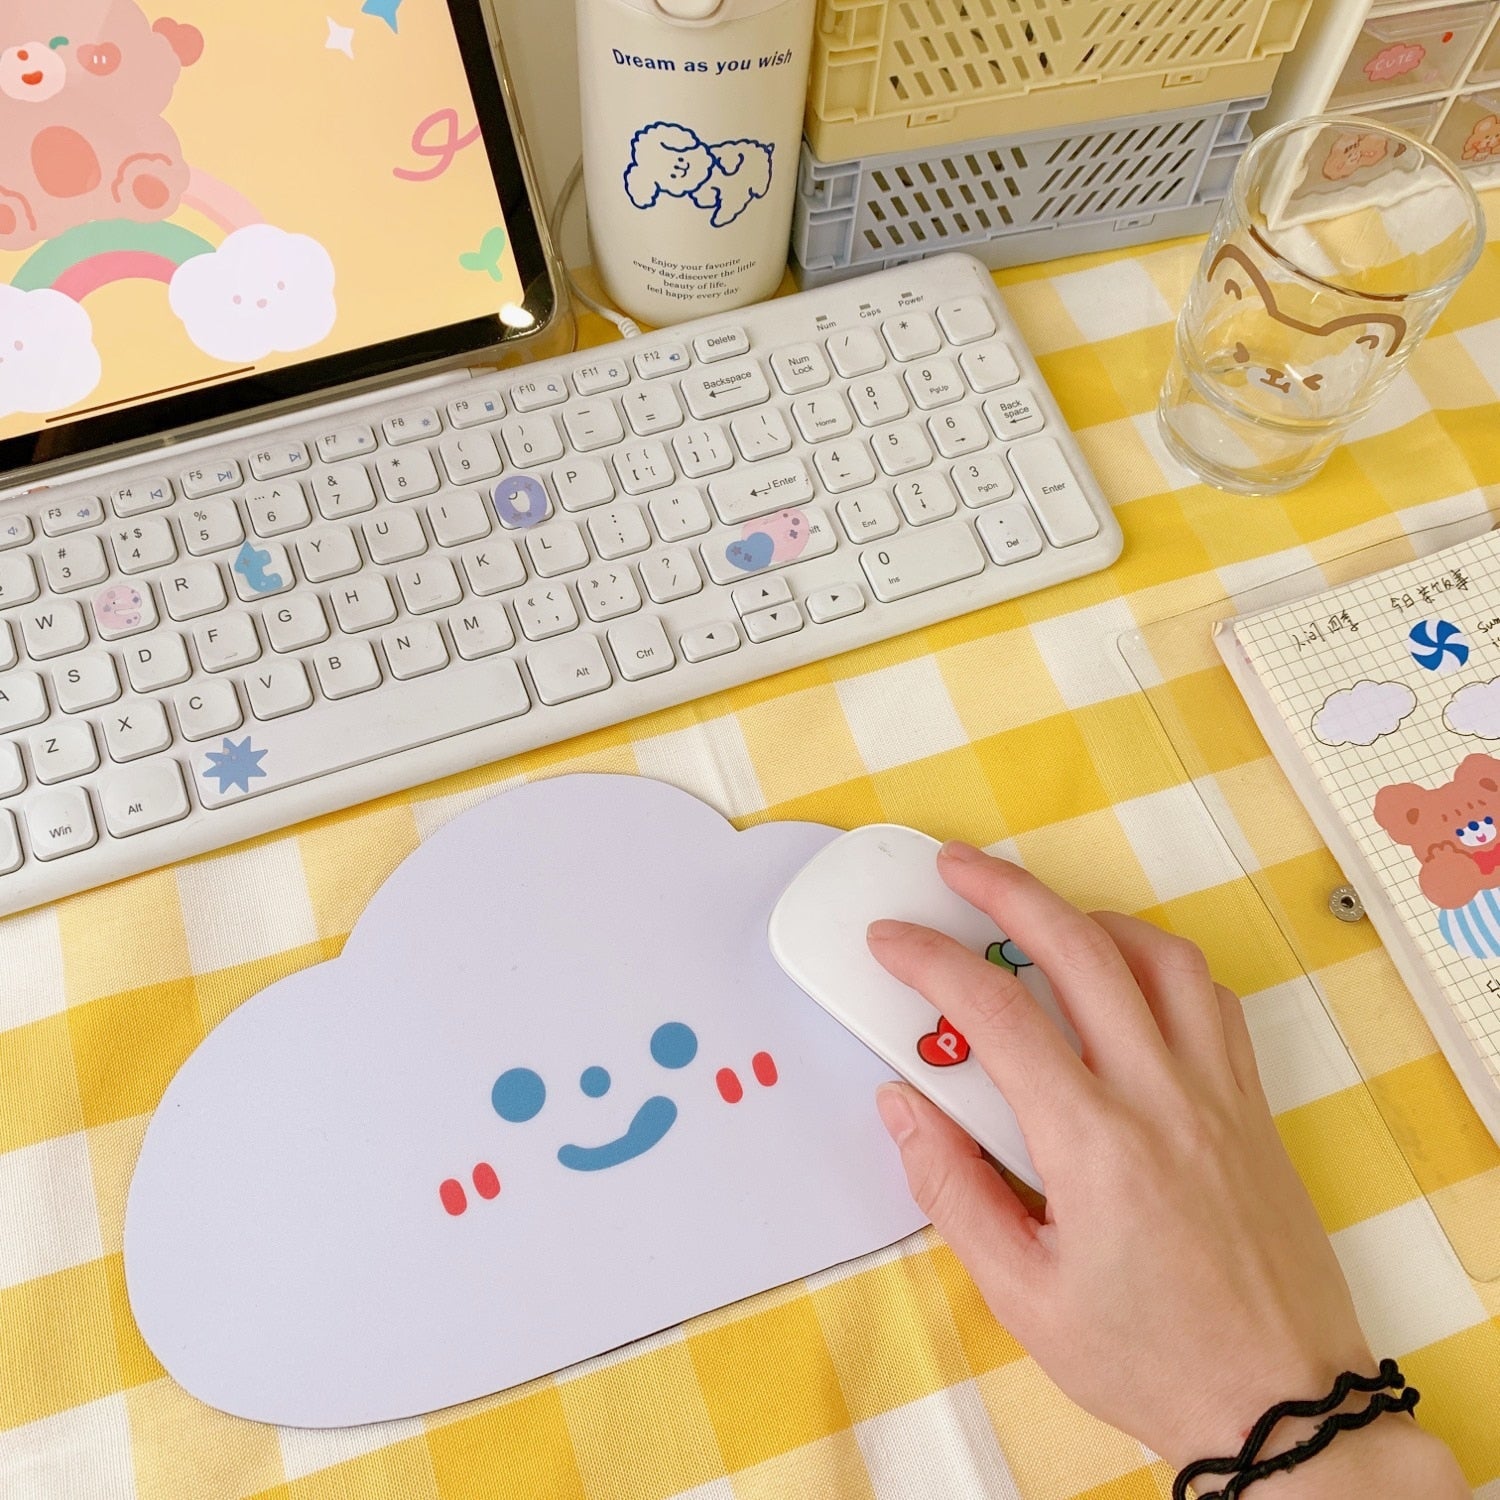 Cute Cartoon Cloud waterproof mousepad